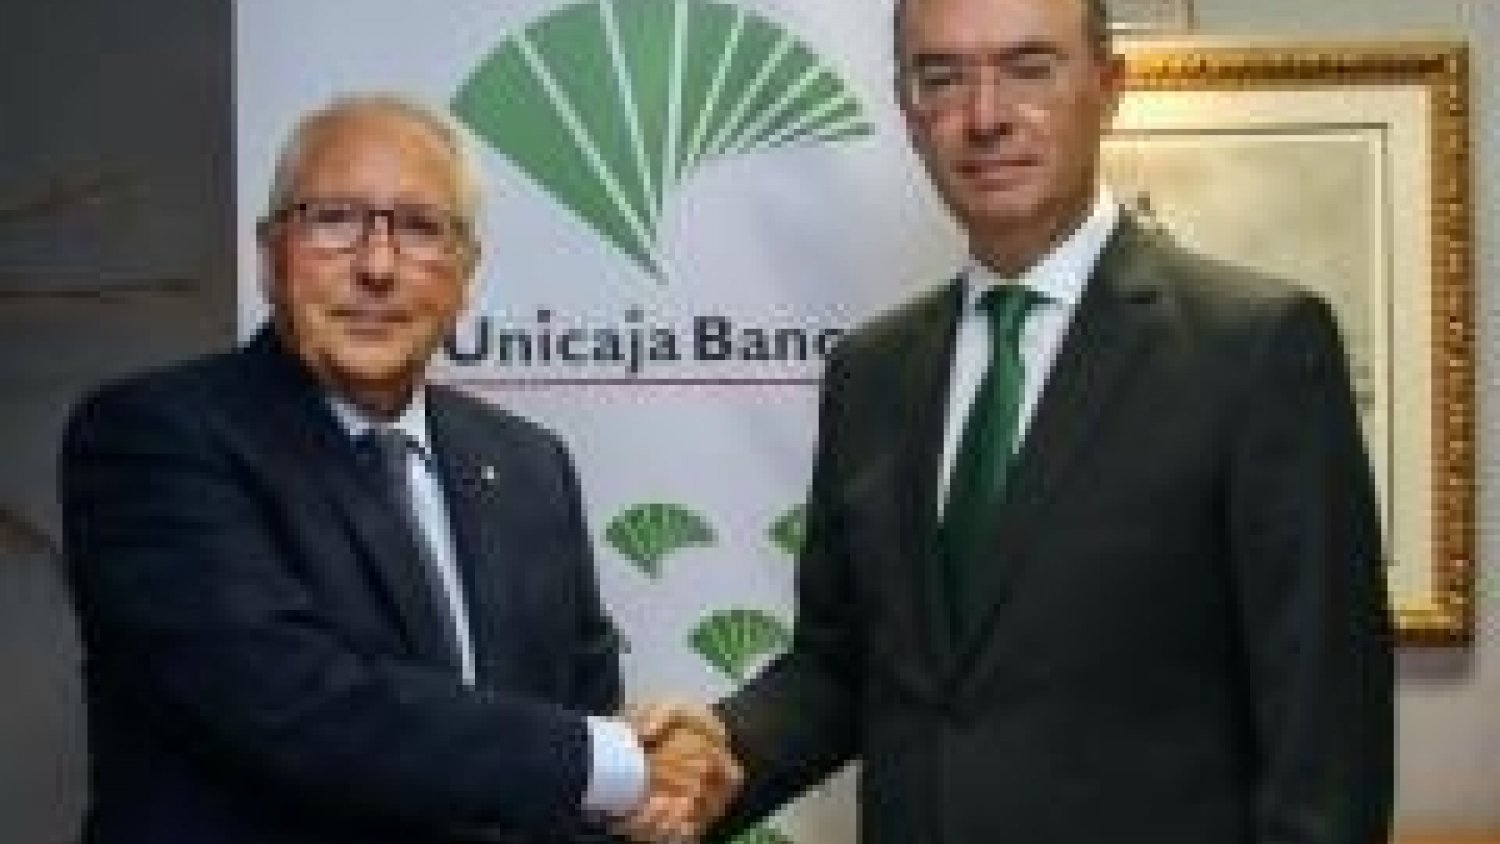 Unicaja Banco renueva su convenio con la Asociación Española de Productores de Frutas Tropicales